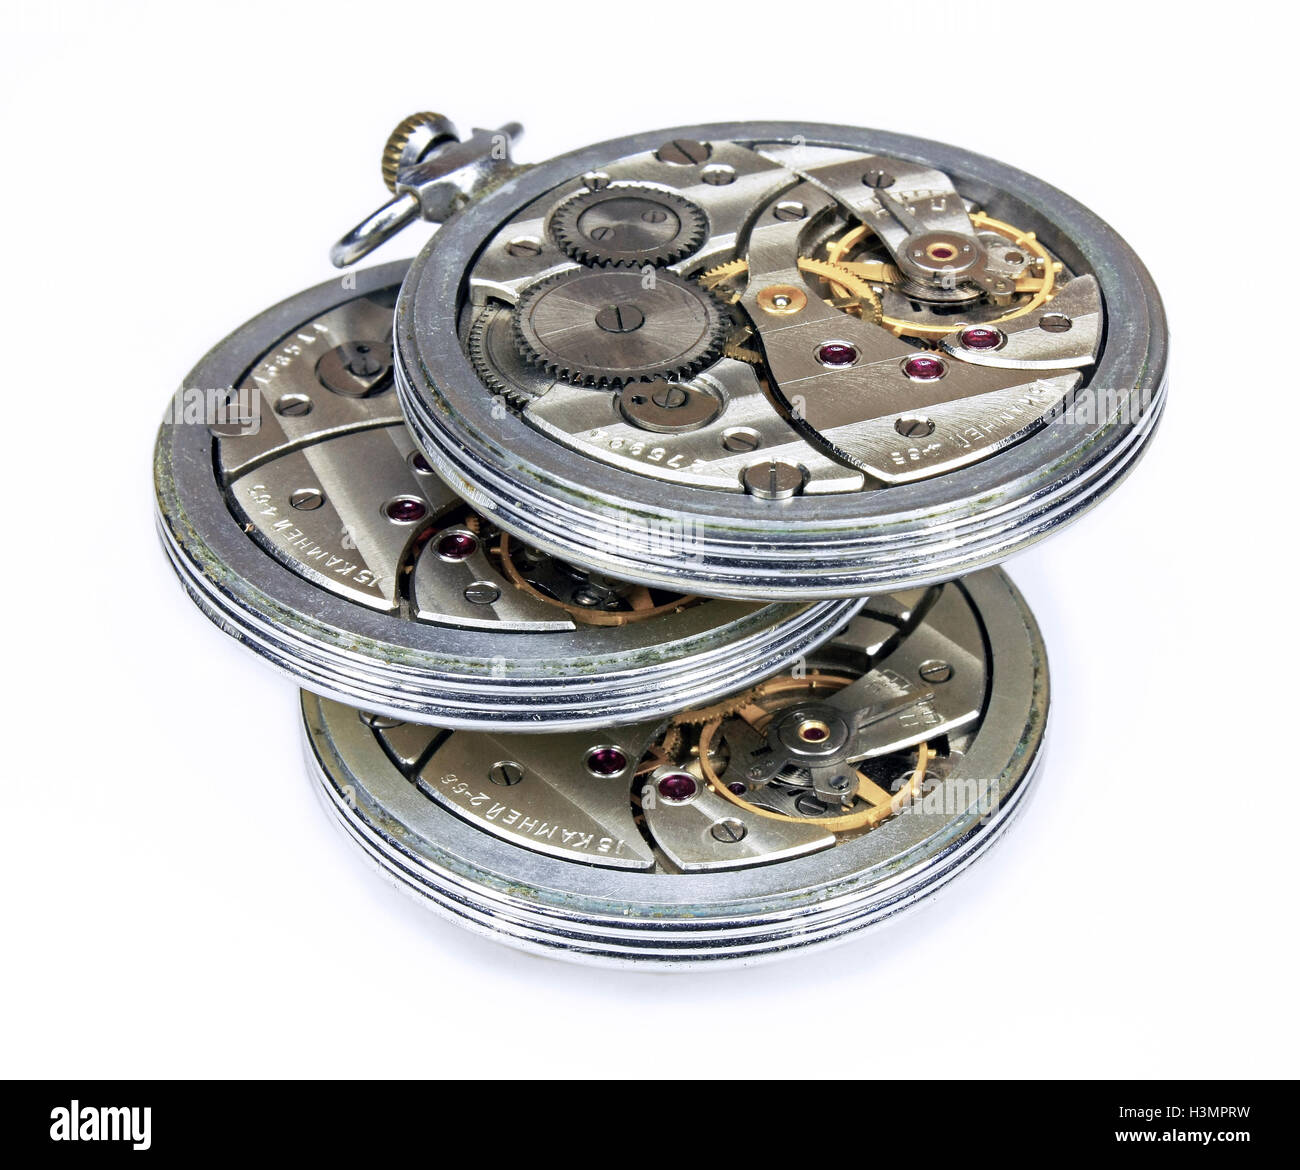 Vi simile sovietica vecchio orologio da tasca con meccanismo di ruote e molle isolati su sfondo bianco Foto Stock